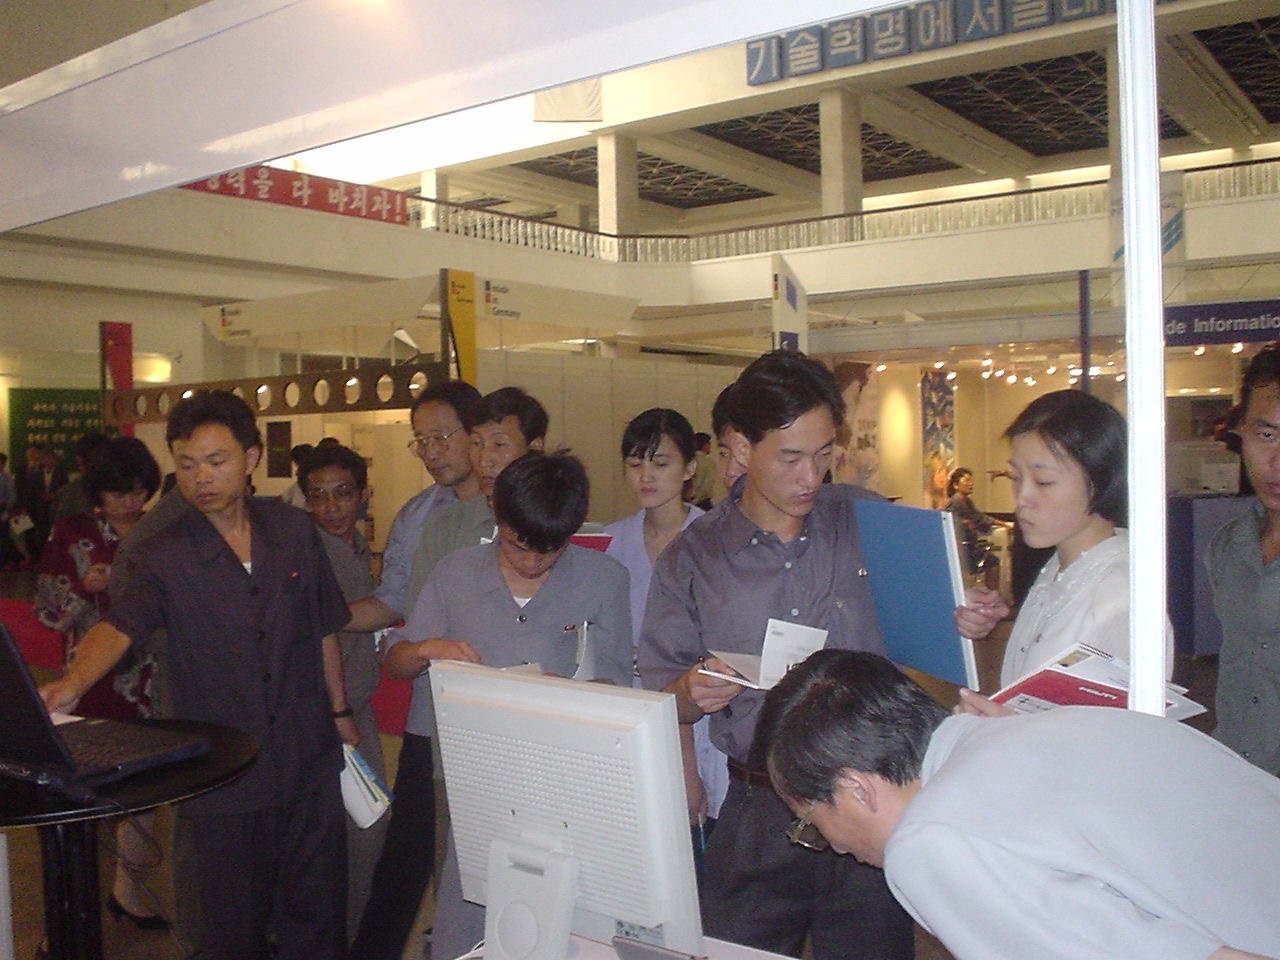 ITIE Exhibition in Pyongyang